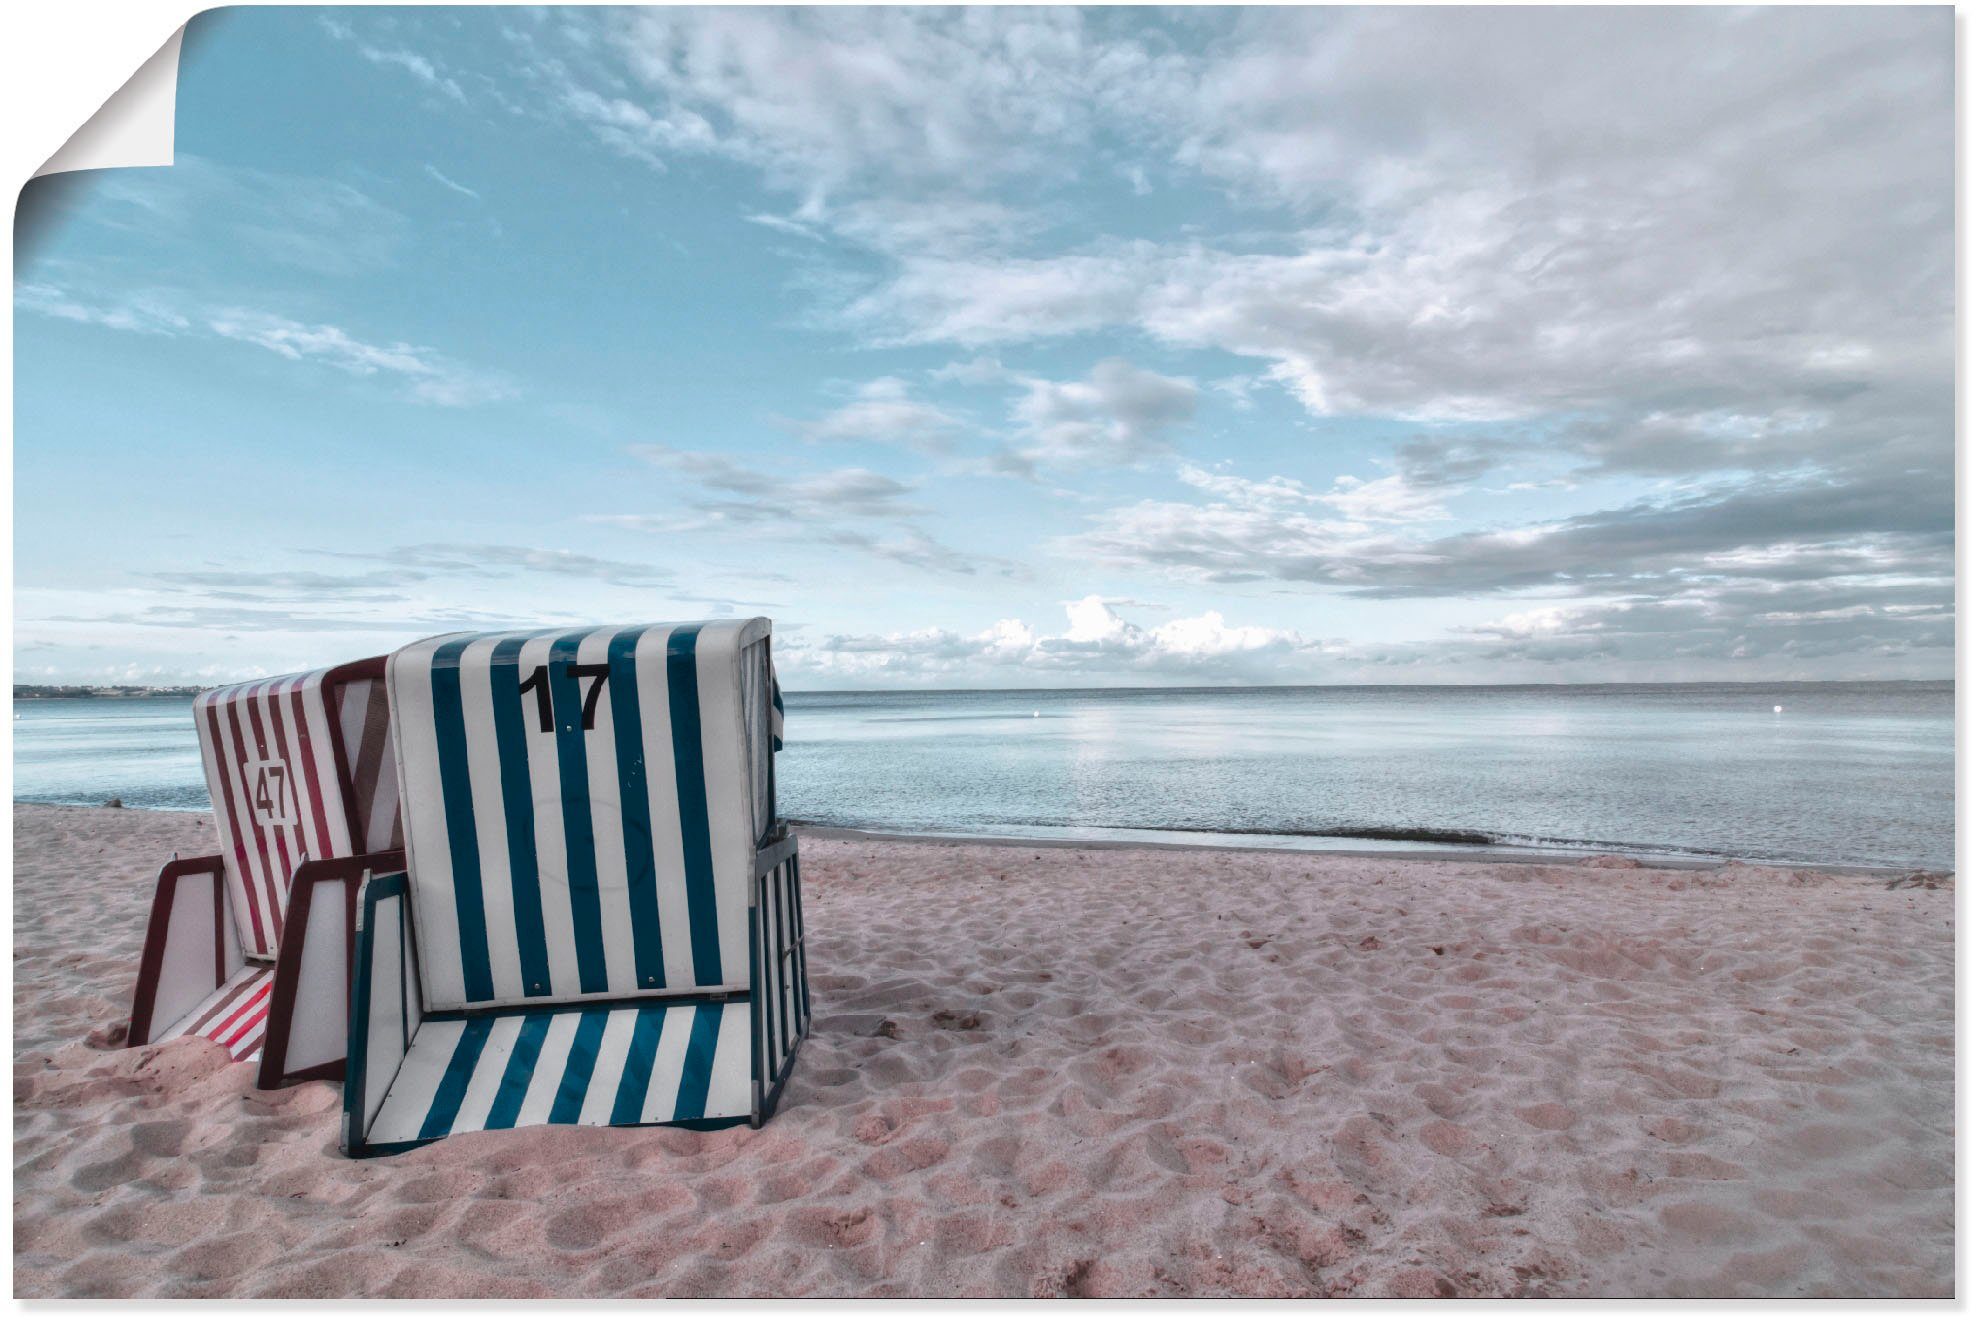 Artland Artprint Eenzame strandstoelen aan het Ostseestrand in vele afmetingen & productsoorten - artprint van aluminium / artprint voor buiten, artprint op linnen, poster, muursti